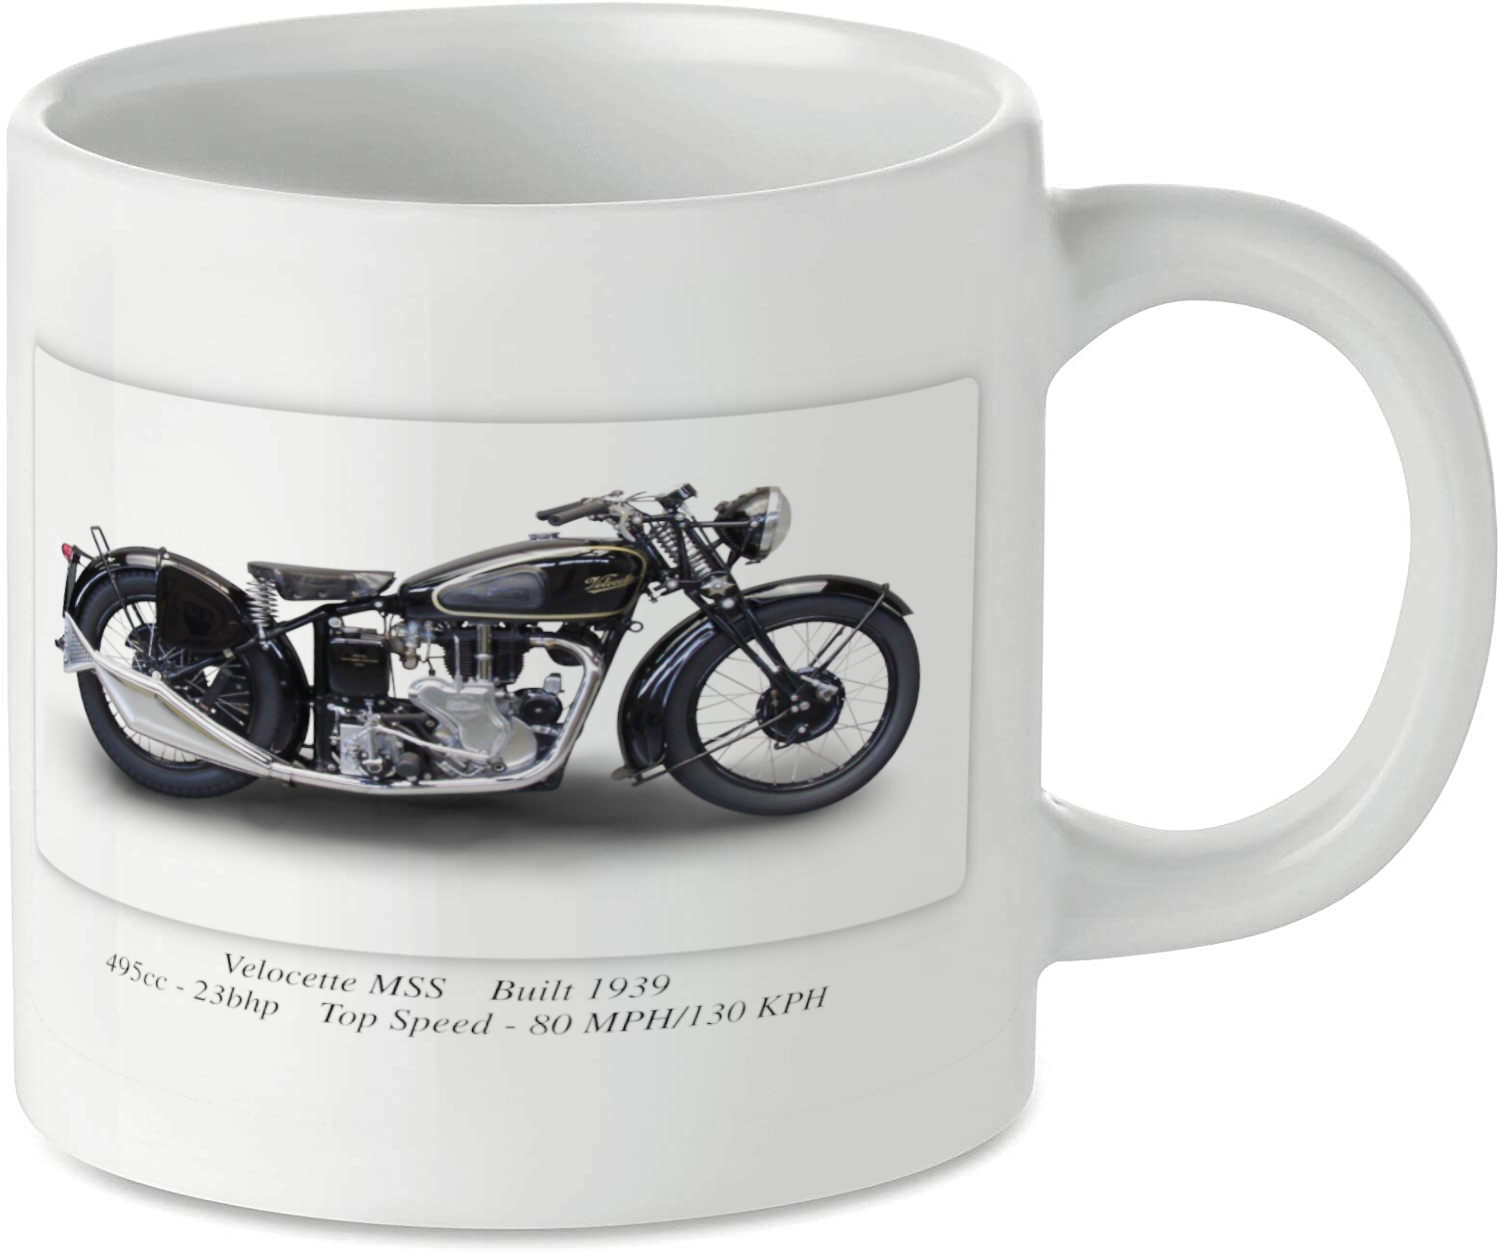 Velocette MSS Motorbike Motorcycle Tea Coffee Mug Ideal Biker Gift Printed UK